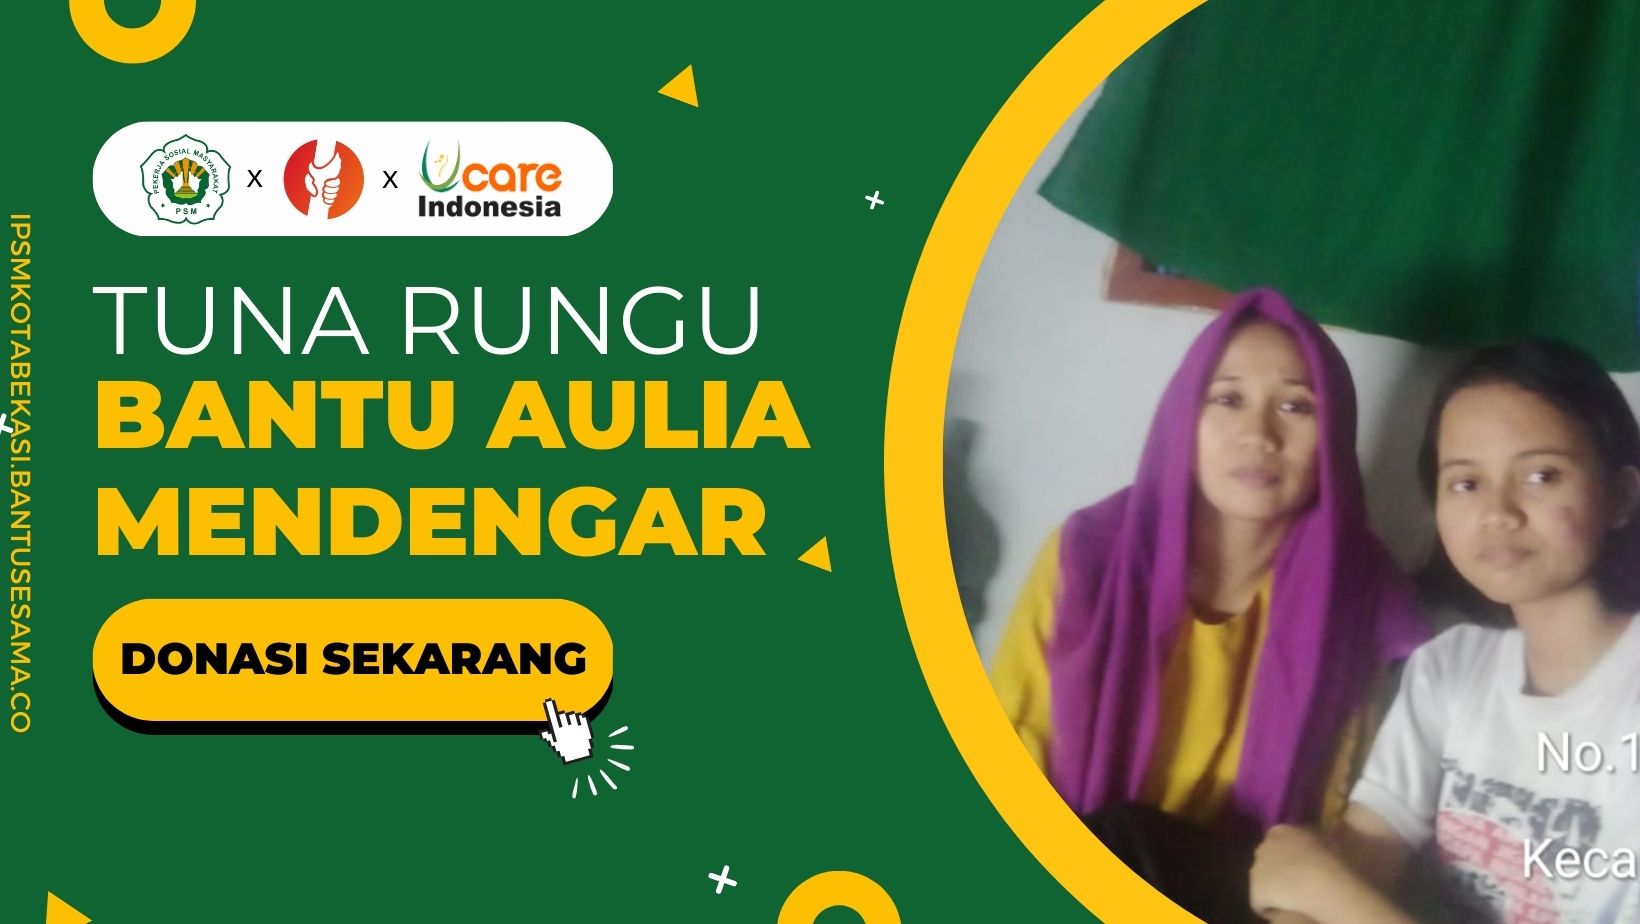 Tuna Rungu, Aulia Masih Berjuang untuk Bisa Mendengar! banner